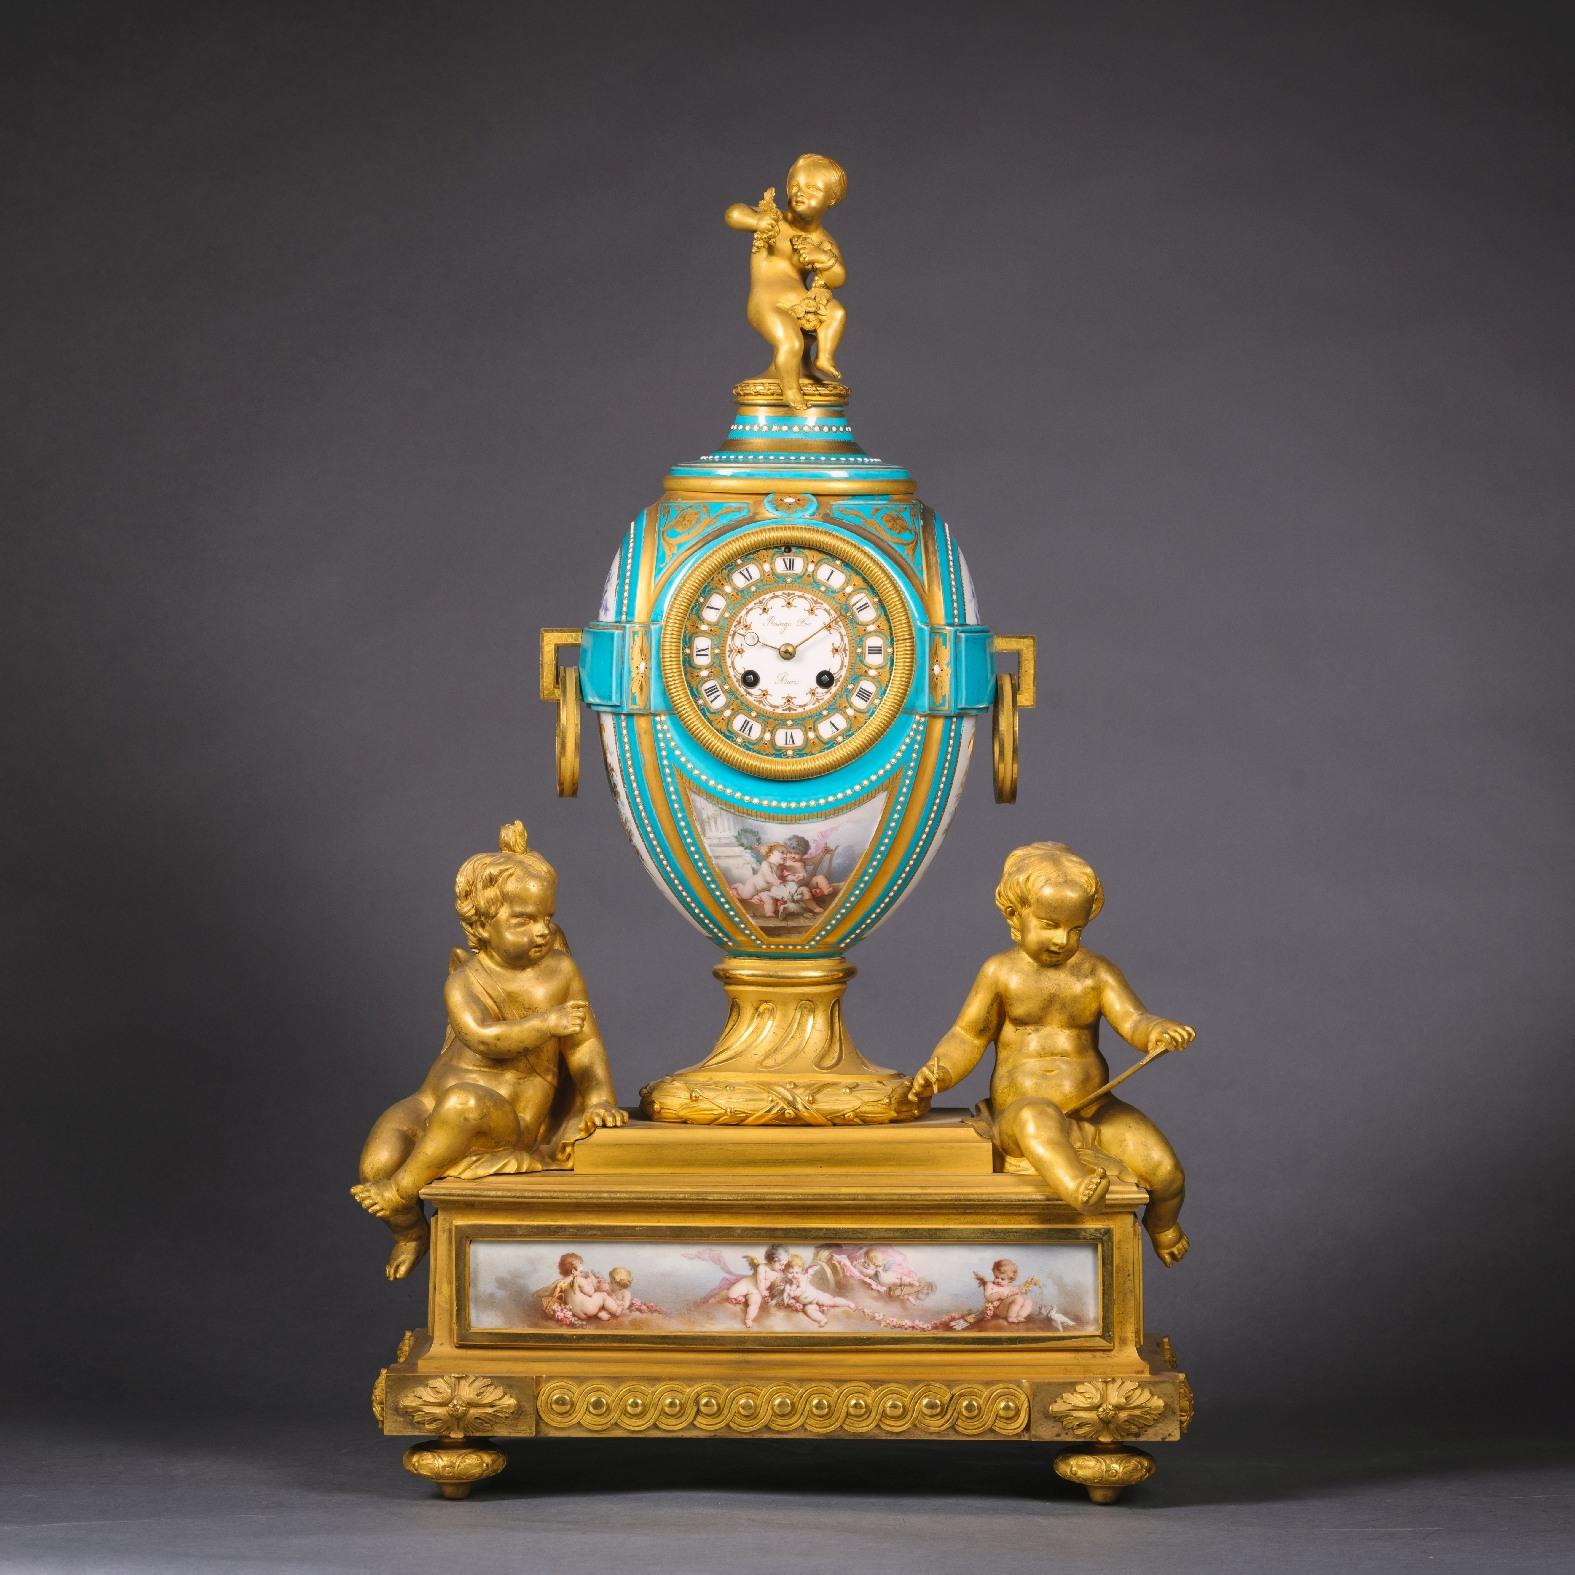 Eine feine Napoleon III vergoldete Bronze und Porzellan drei Stück Uhr Garnitur von Raingo Freres. Das runde, vergoldete und mit Juwelen verzierte Porzellanzifferblatt der Uhr ist mit römischen Ziffern und der Signatur 